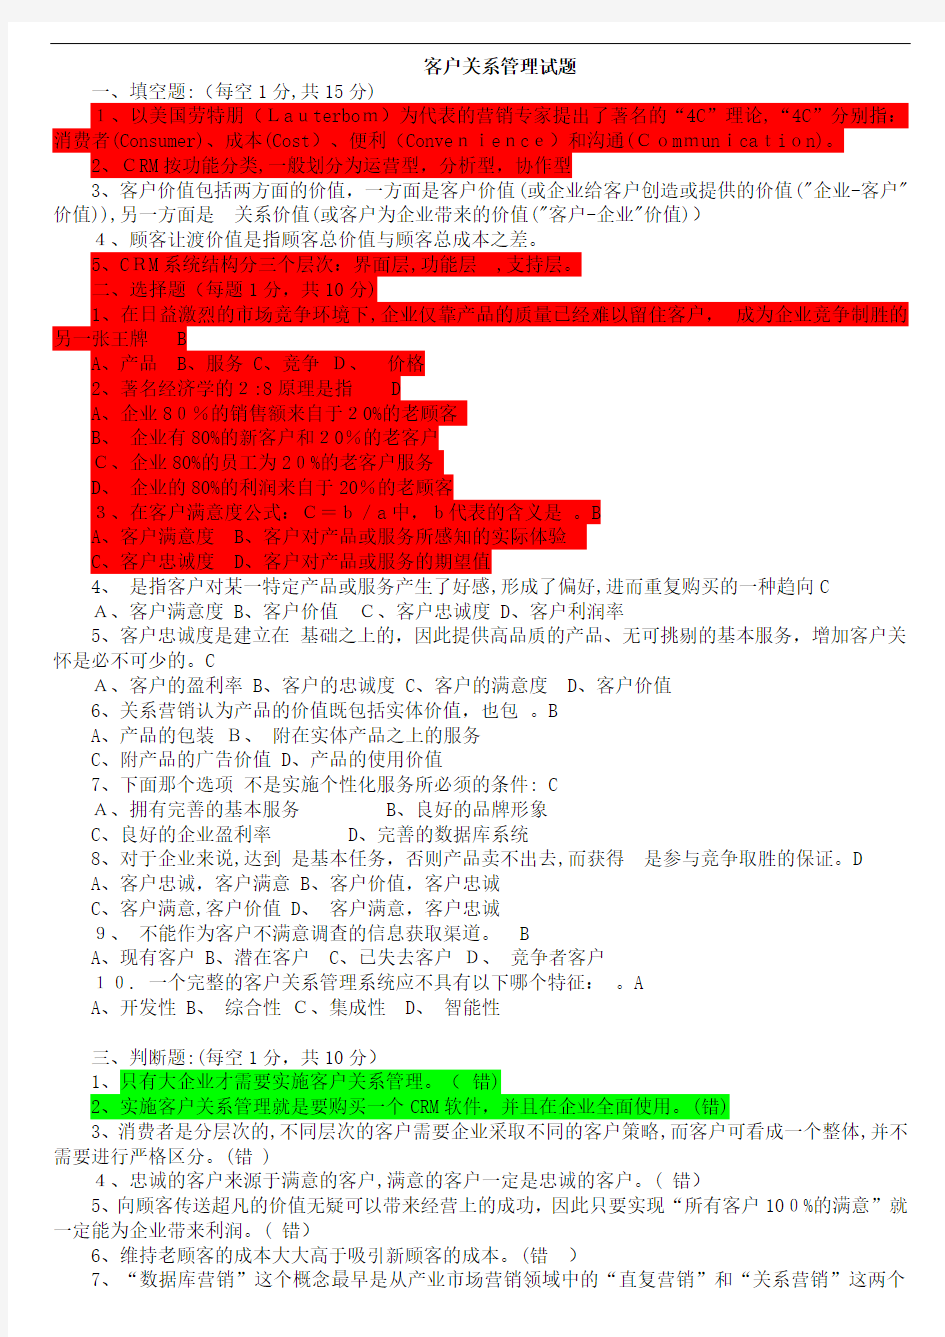 上海财经大学客户关系管理试题及标准答案